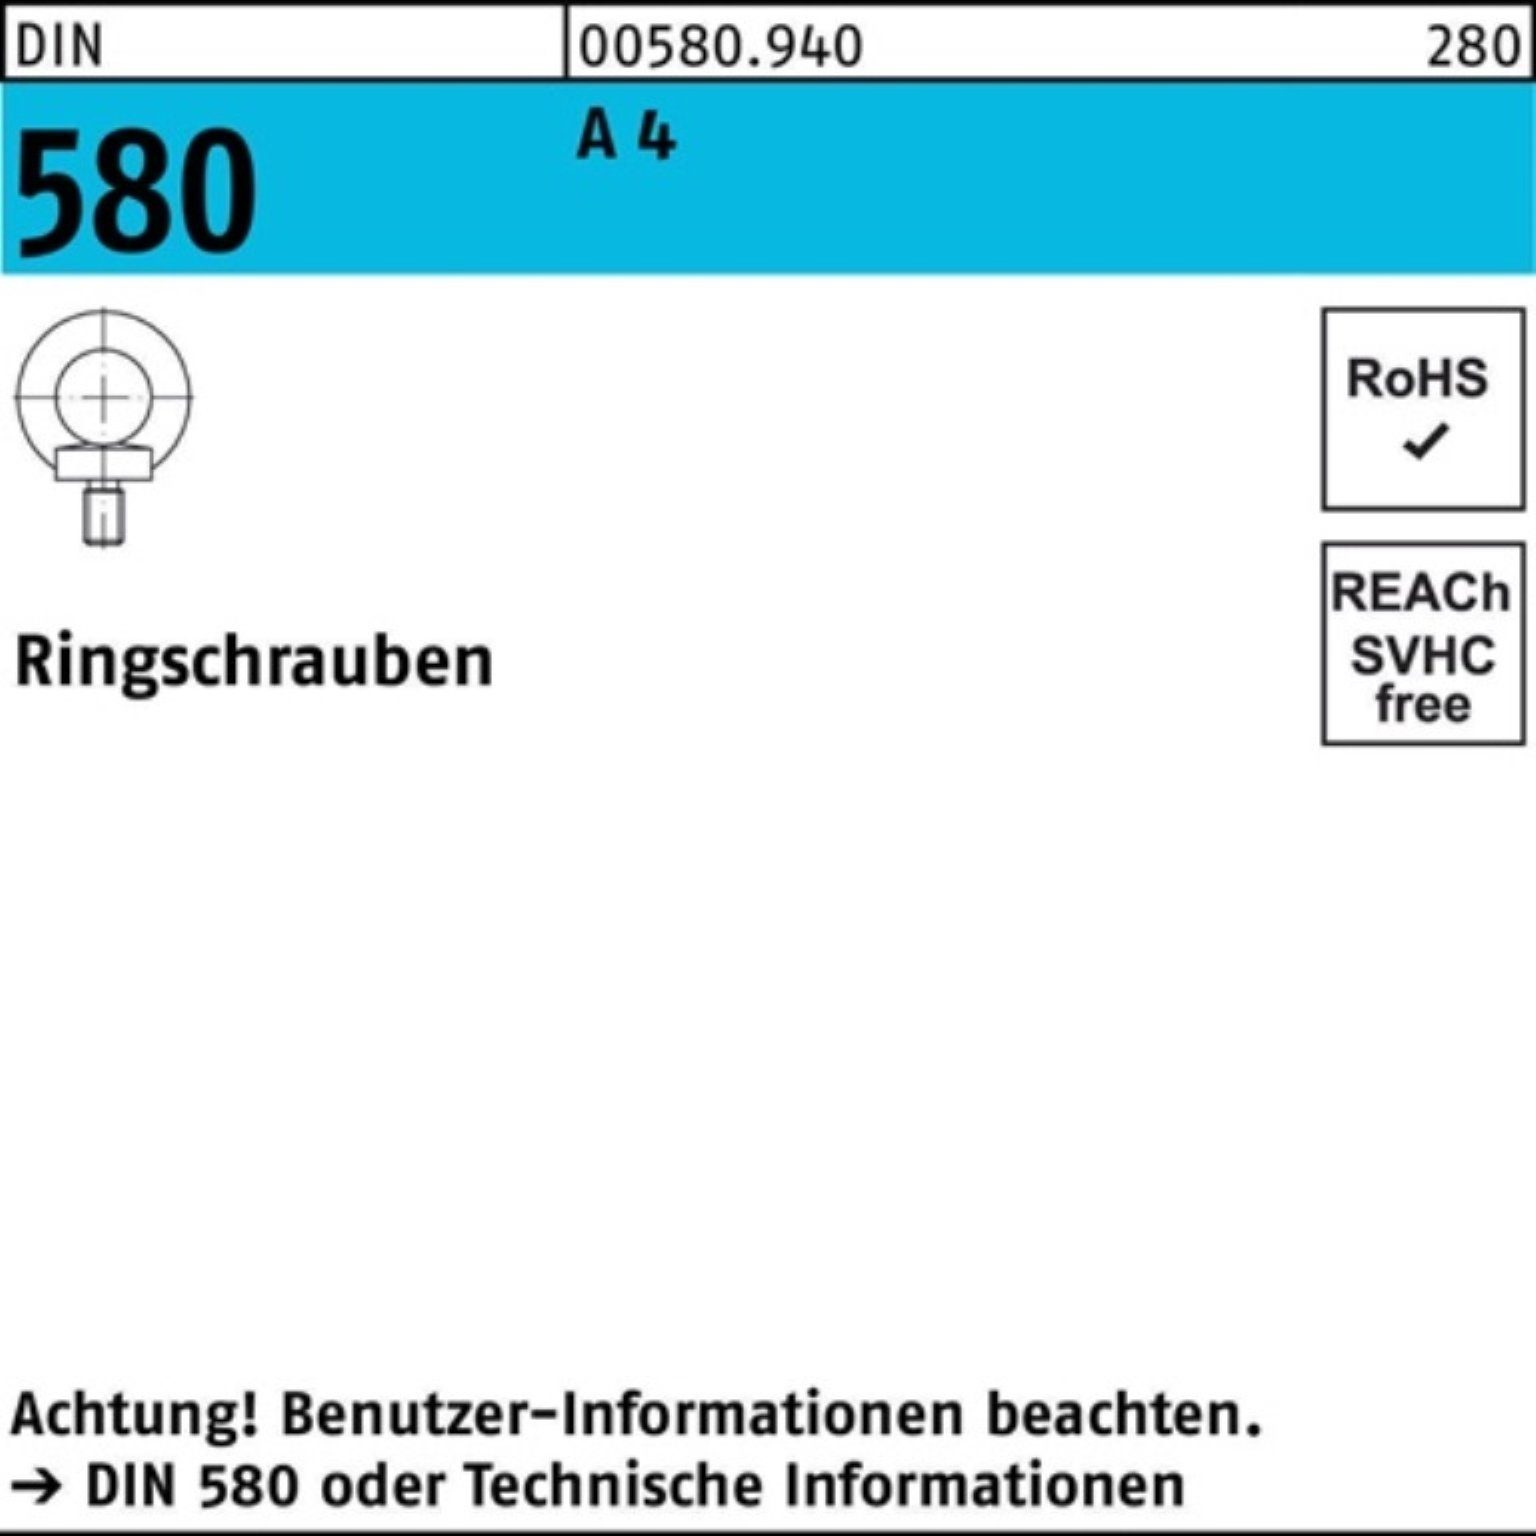 Reyher Schraube 100er Pack Ringschraube DIN 580 M24 A 4 1 Stück DIN 580 A 4 Ringschra